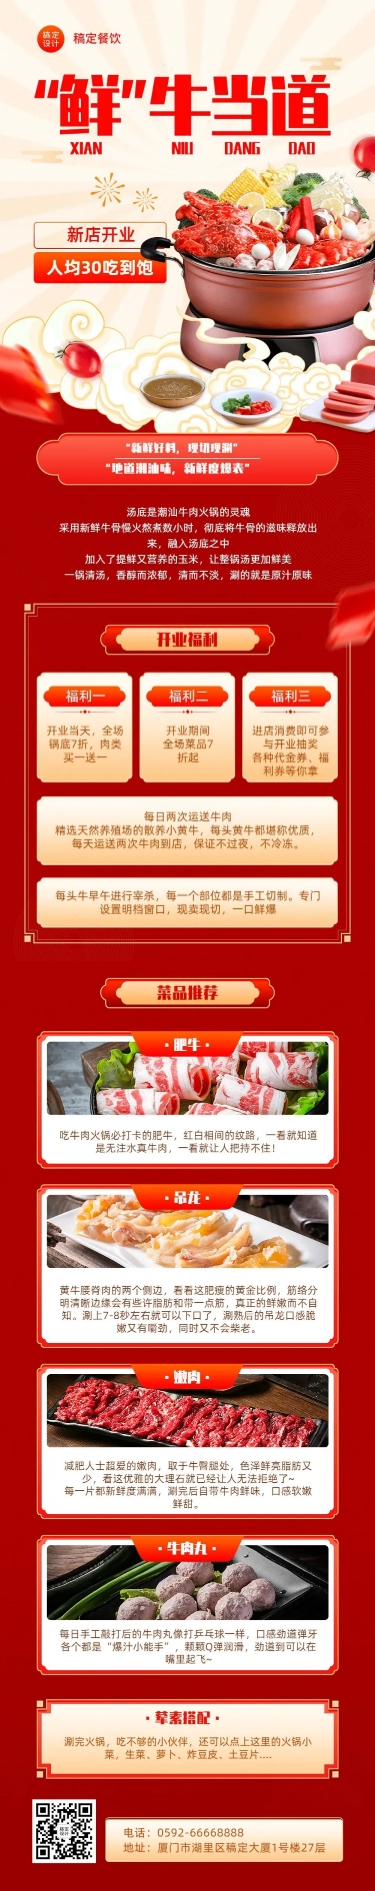 餐饮美食火锅店新店开业宣传文章长图预览效果